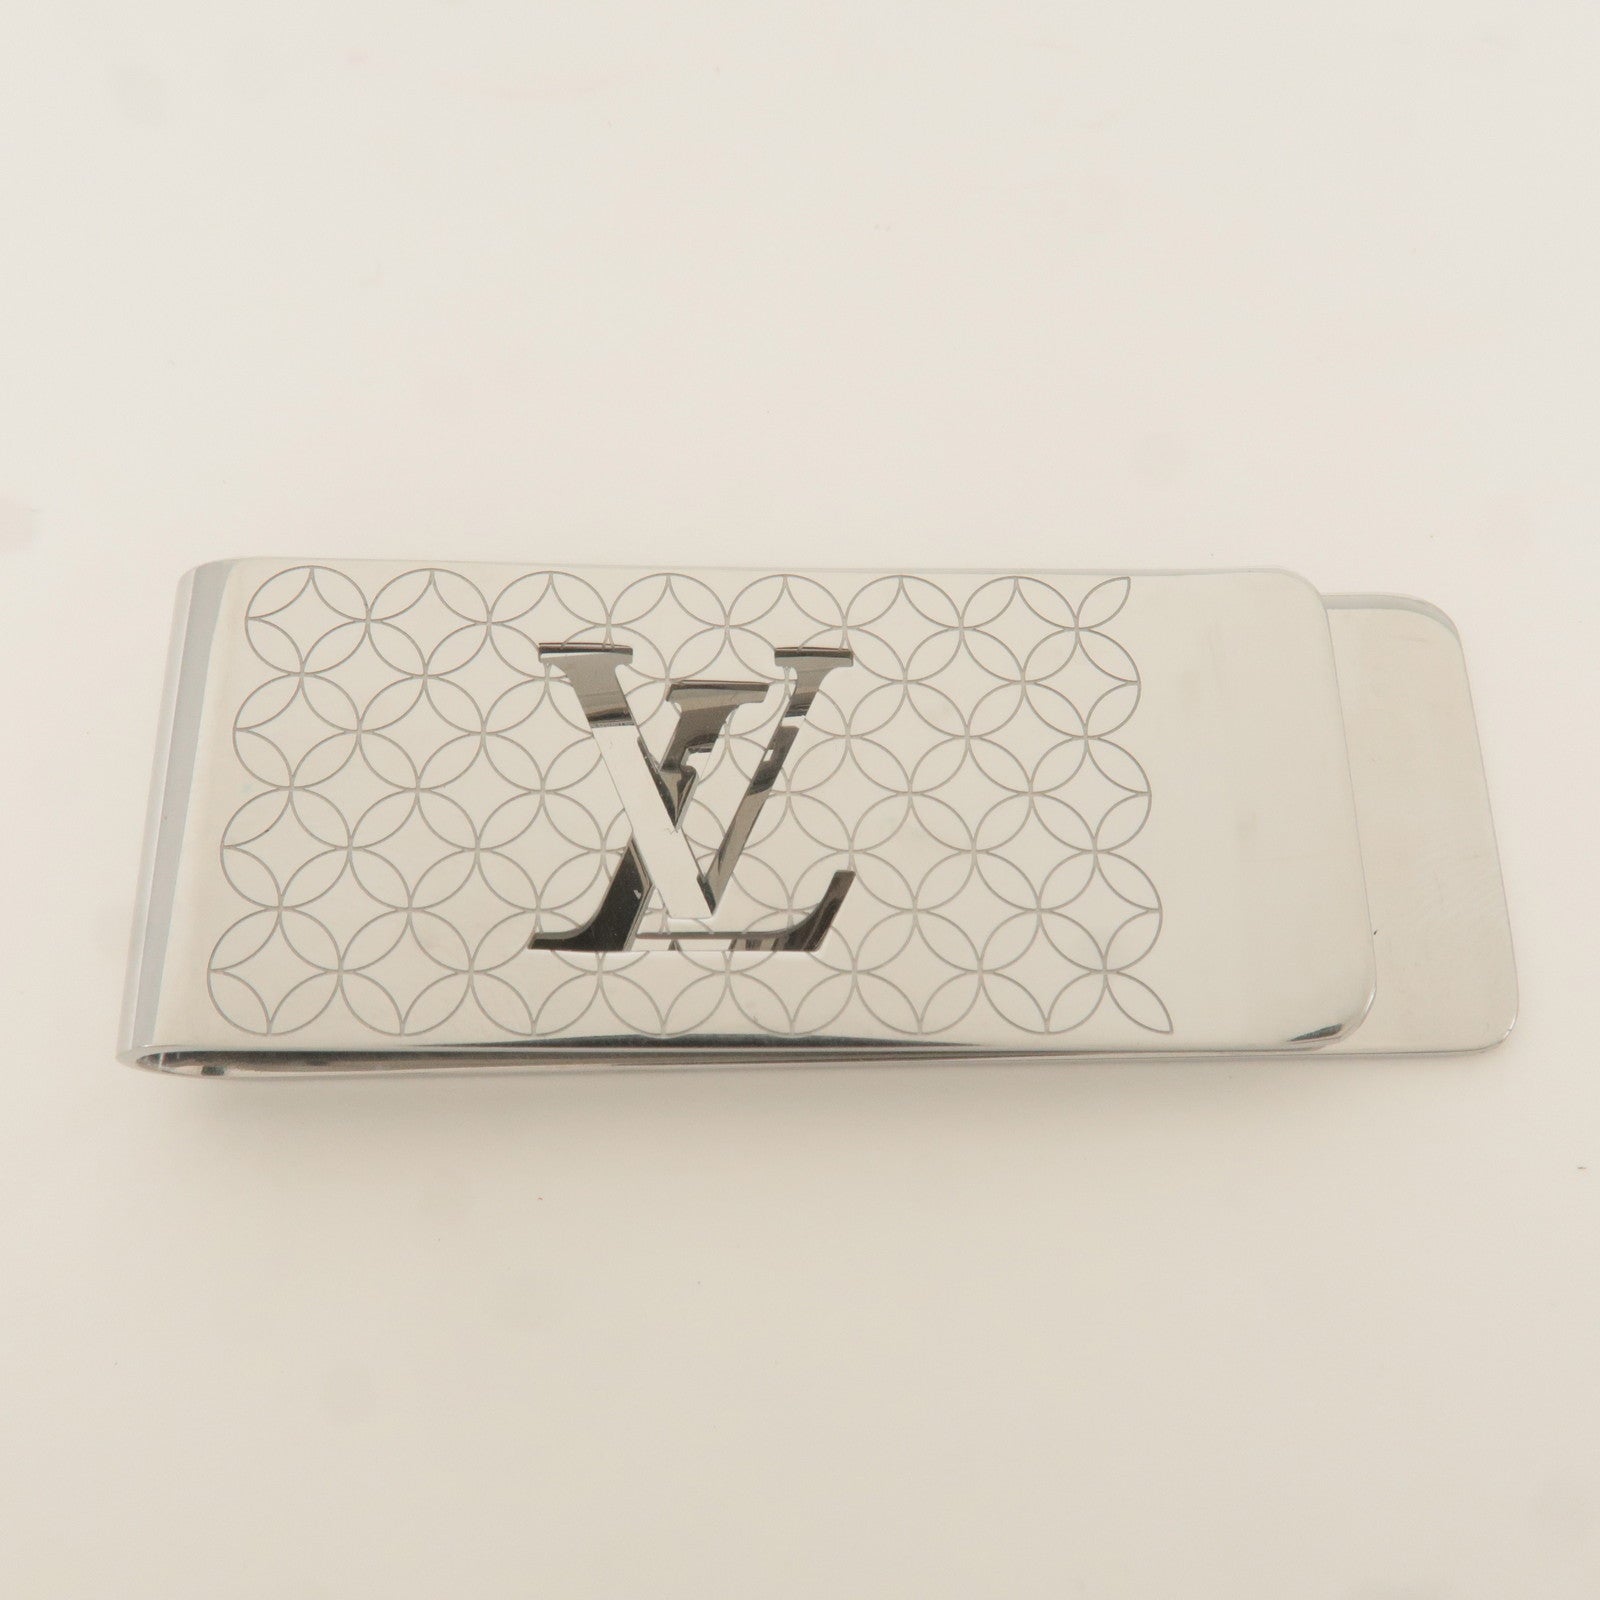 Billets - Vuitton - Pince - Clip - Louis - M65041 – Louis Vuitton